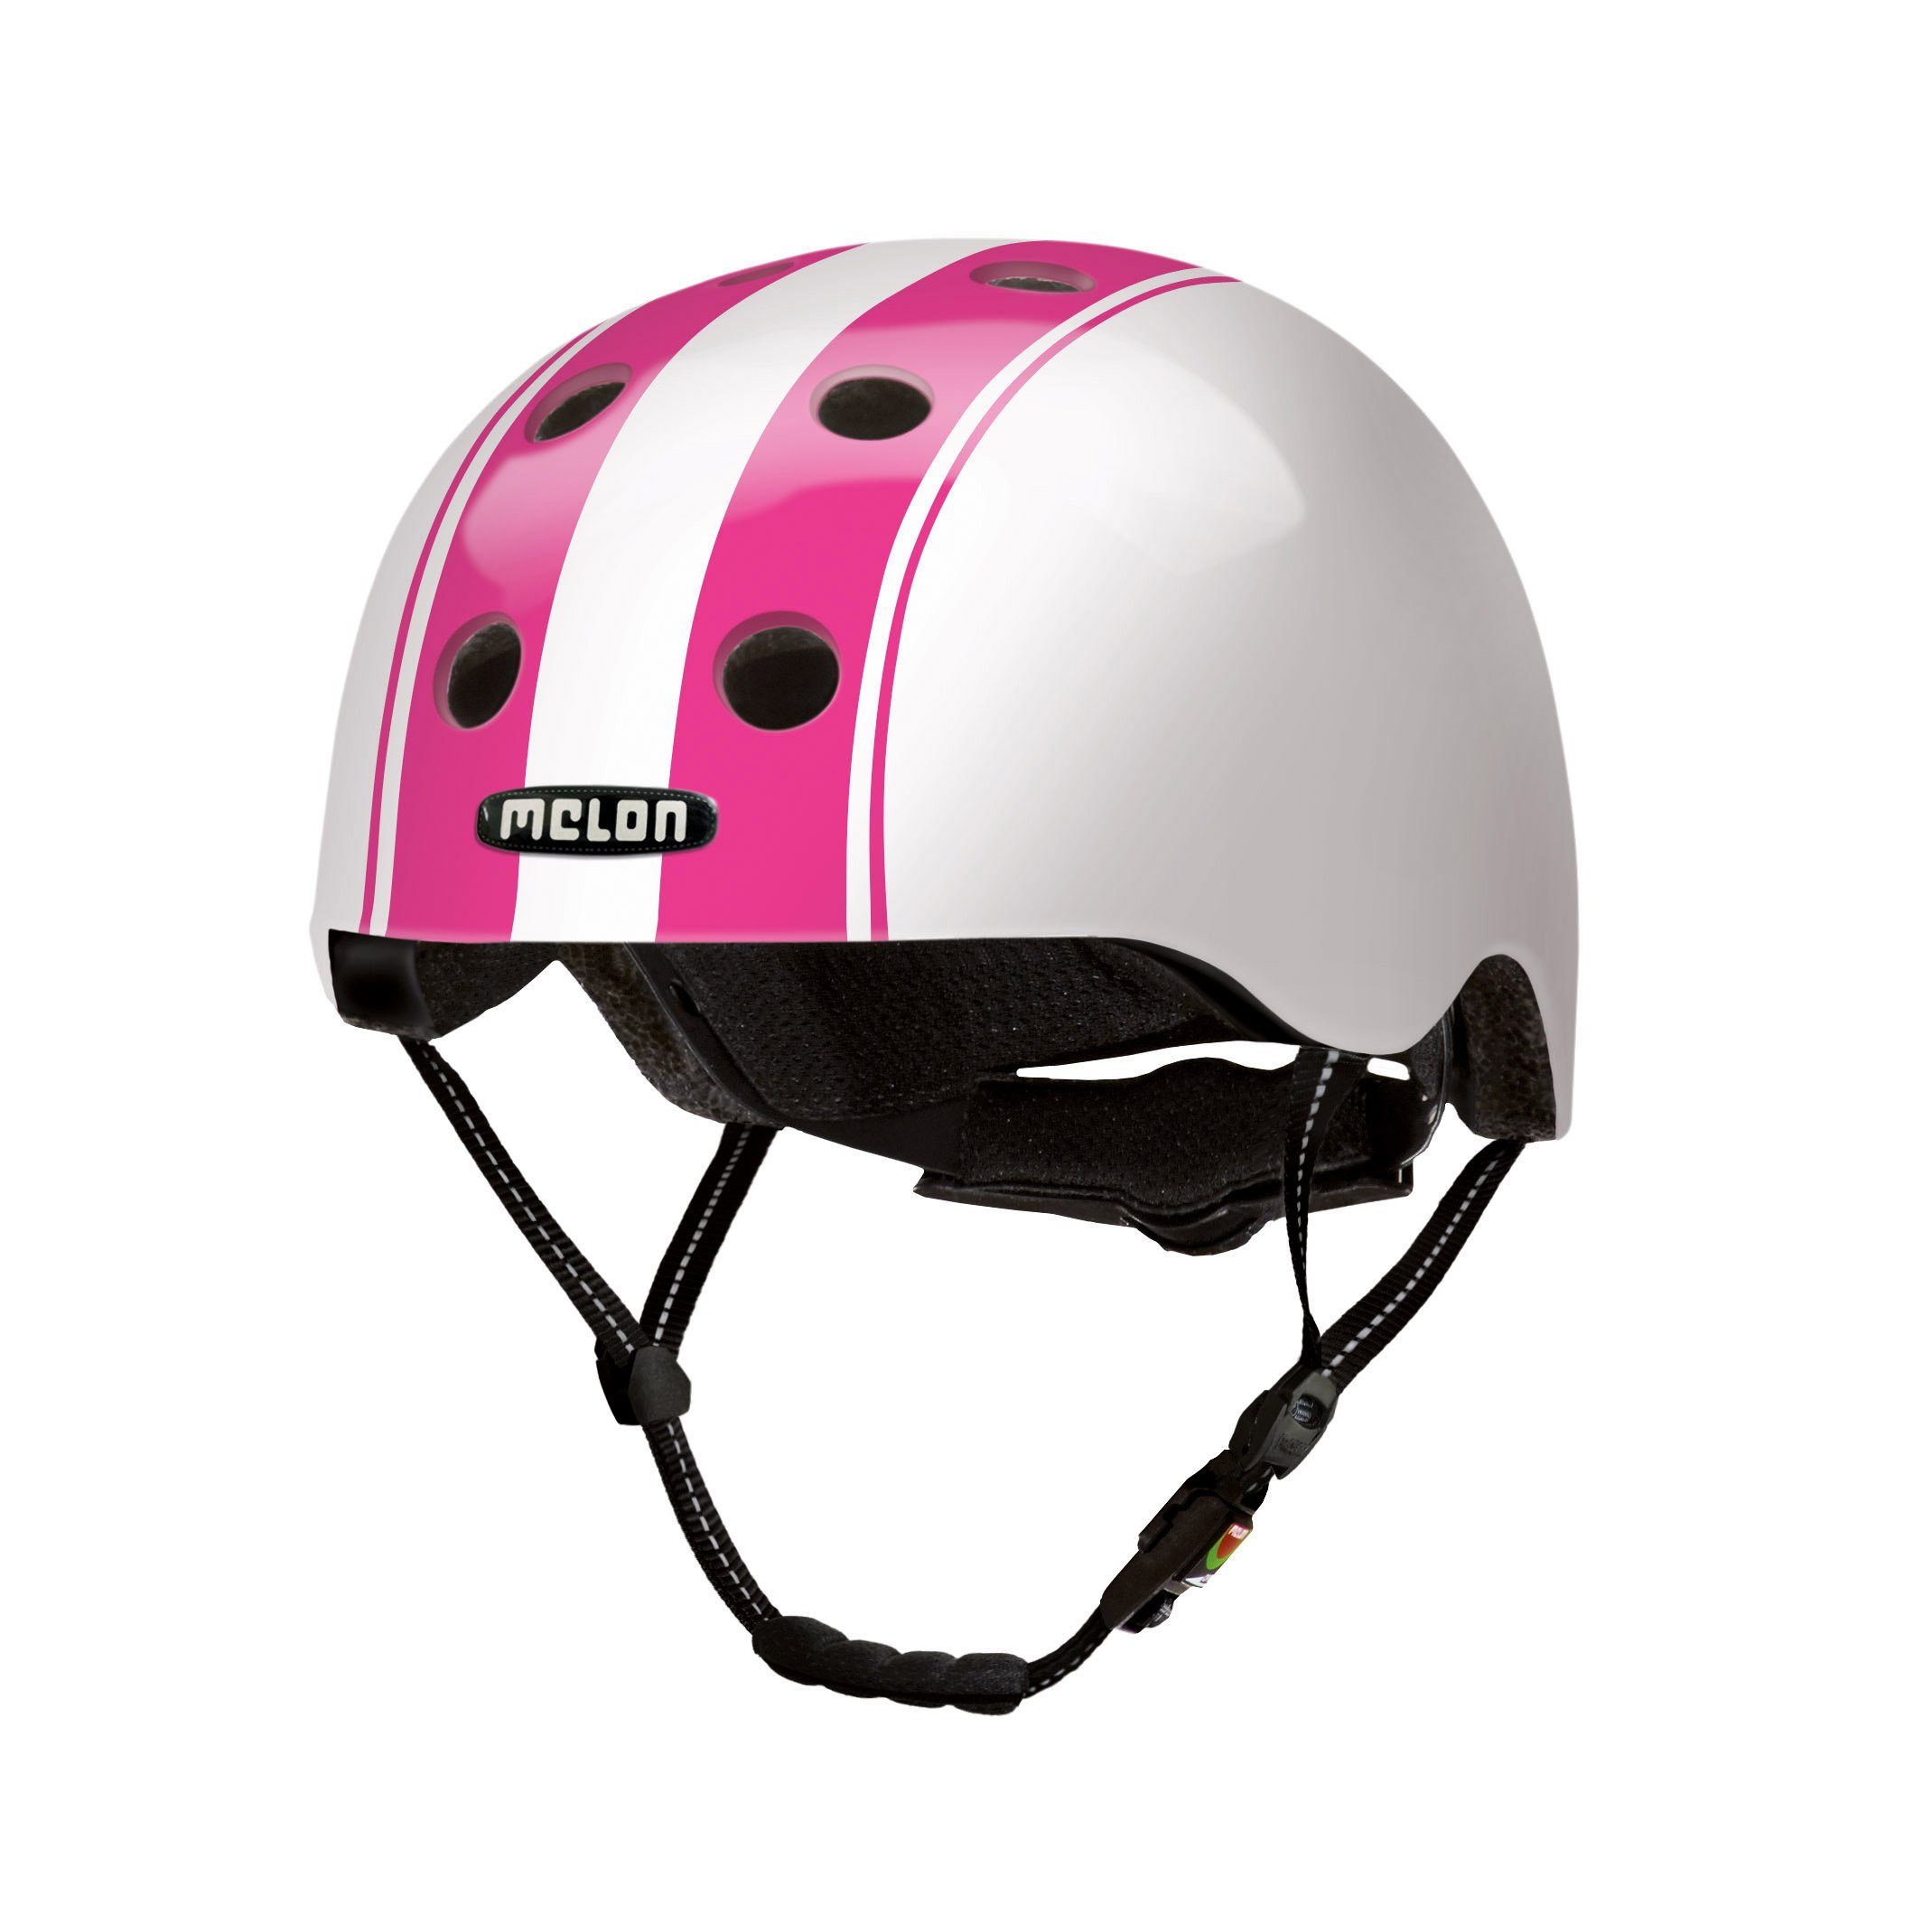 Melon Fahrradhelm Double Pink White, super leicht, Magnetverschluss, größenverstellbar, mehr als 50 Designs